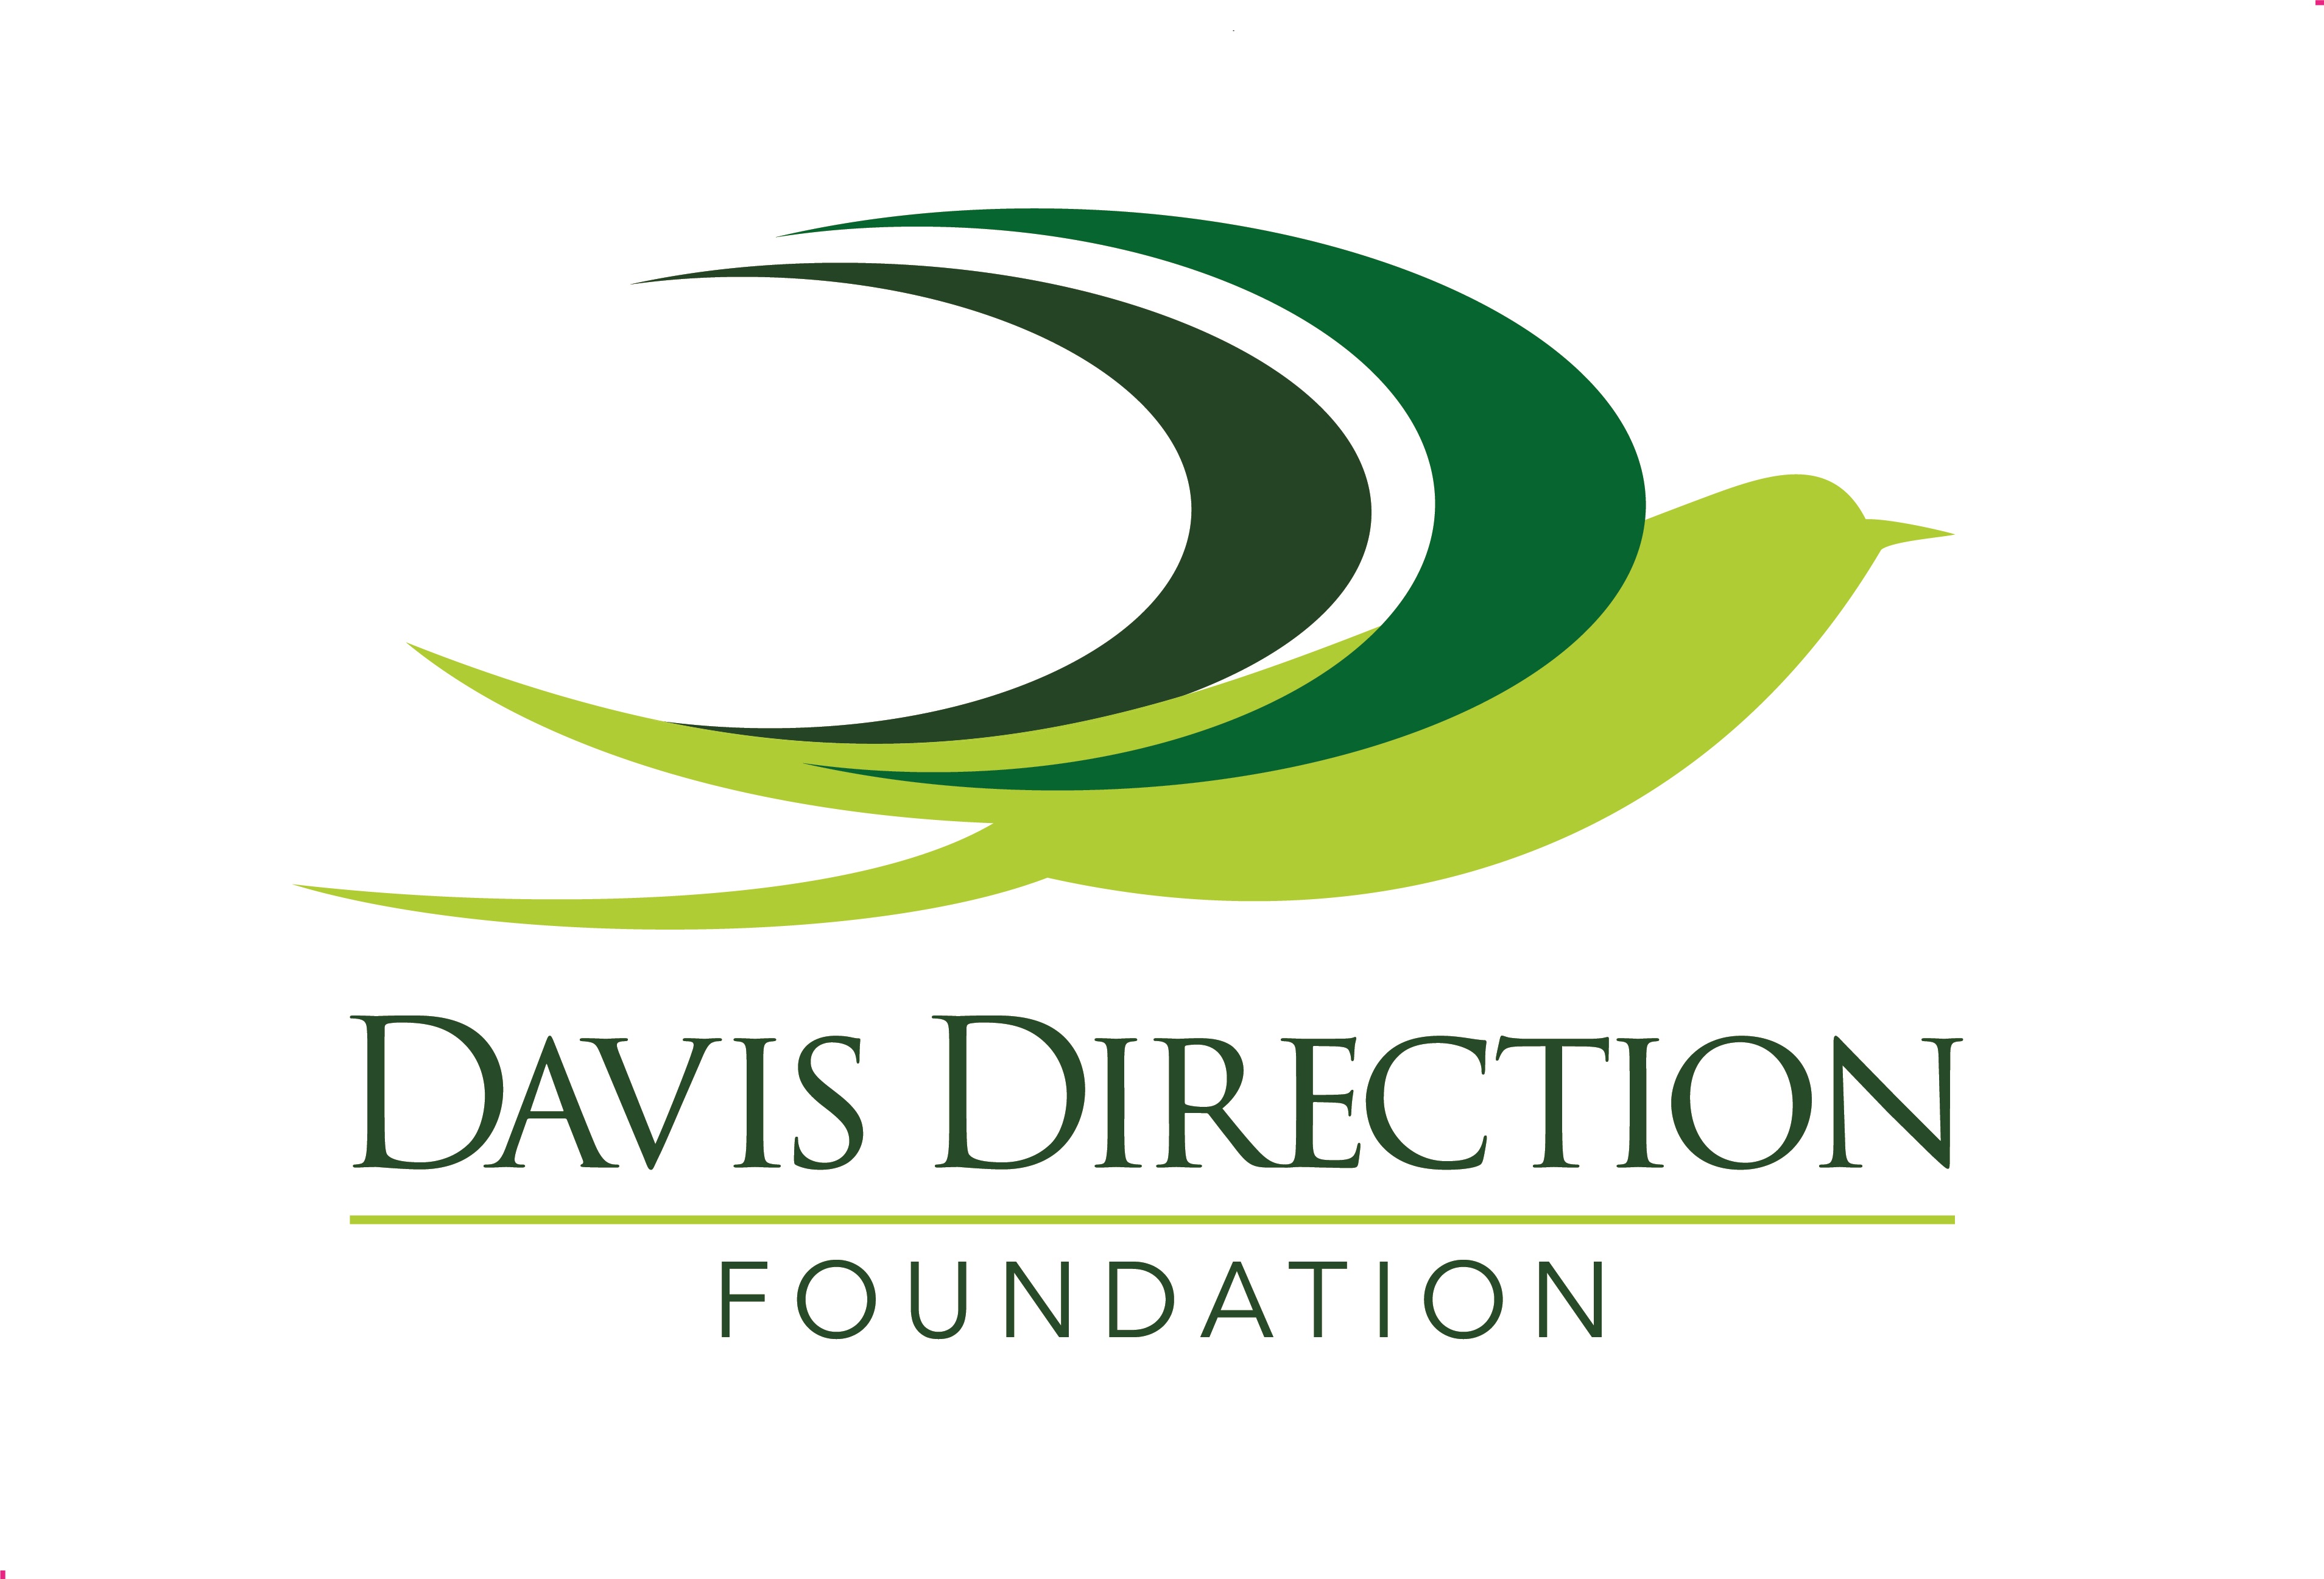 Davis Direction Foundation 
32 N. Fairground Street NE
Marietta, GA 30060